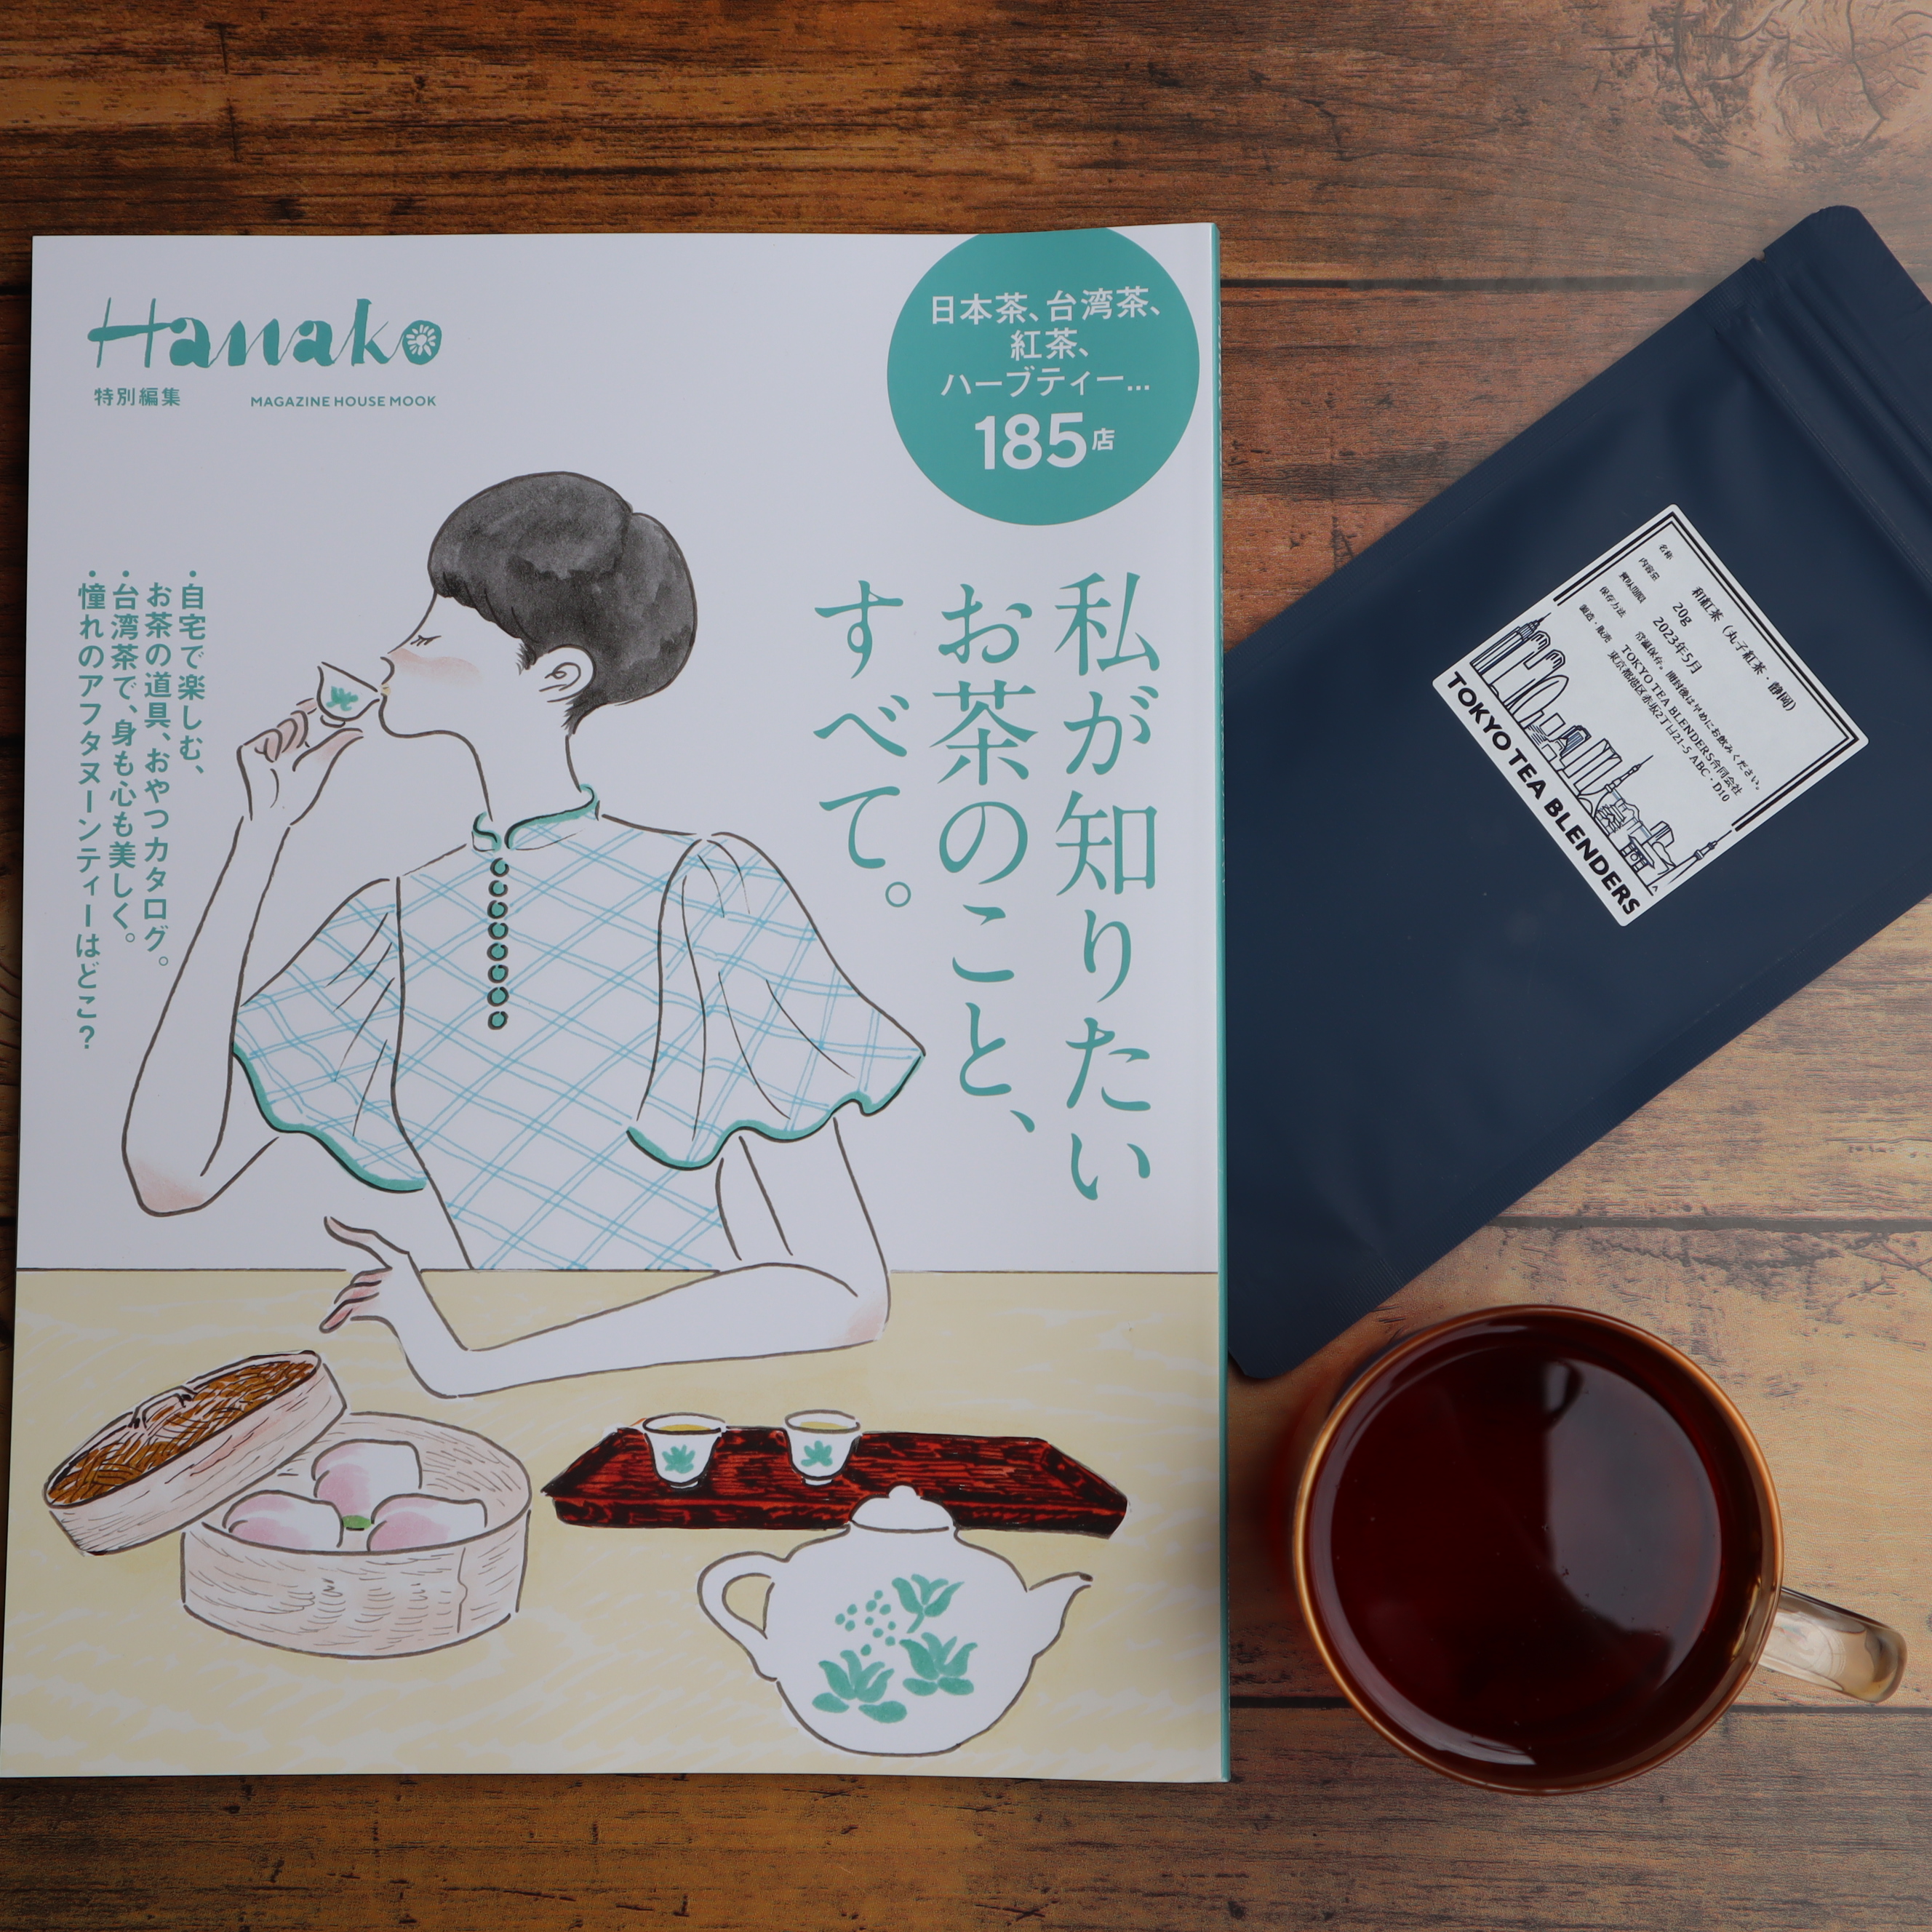 【メディア掲載】Hanako（ハナコ）「私が知りたいお茶のこと、すべて。」にTEA FOLKSが掲載